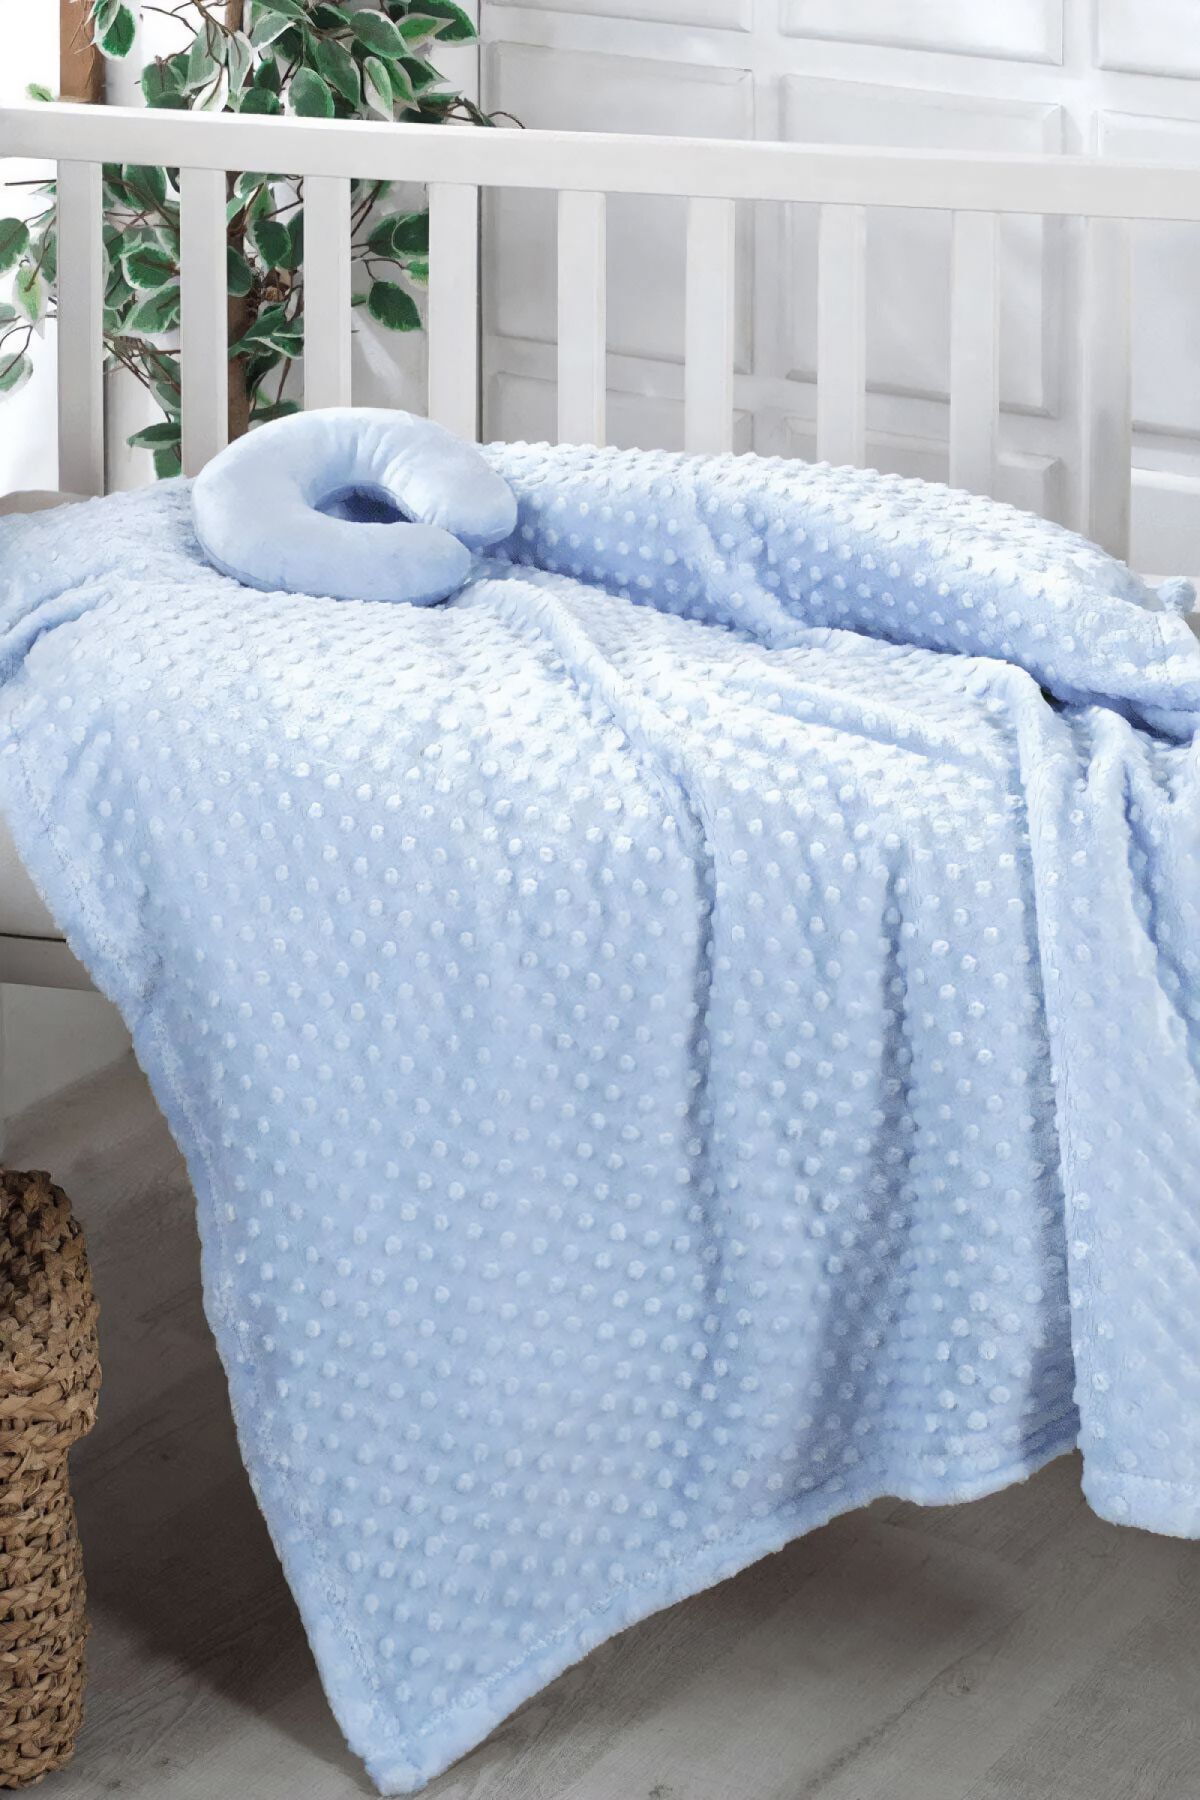 AKSU İpeksoft Boyunluk Hediyeli Tomurcuk Bebek Battaniyesi - Mavi